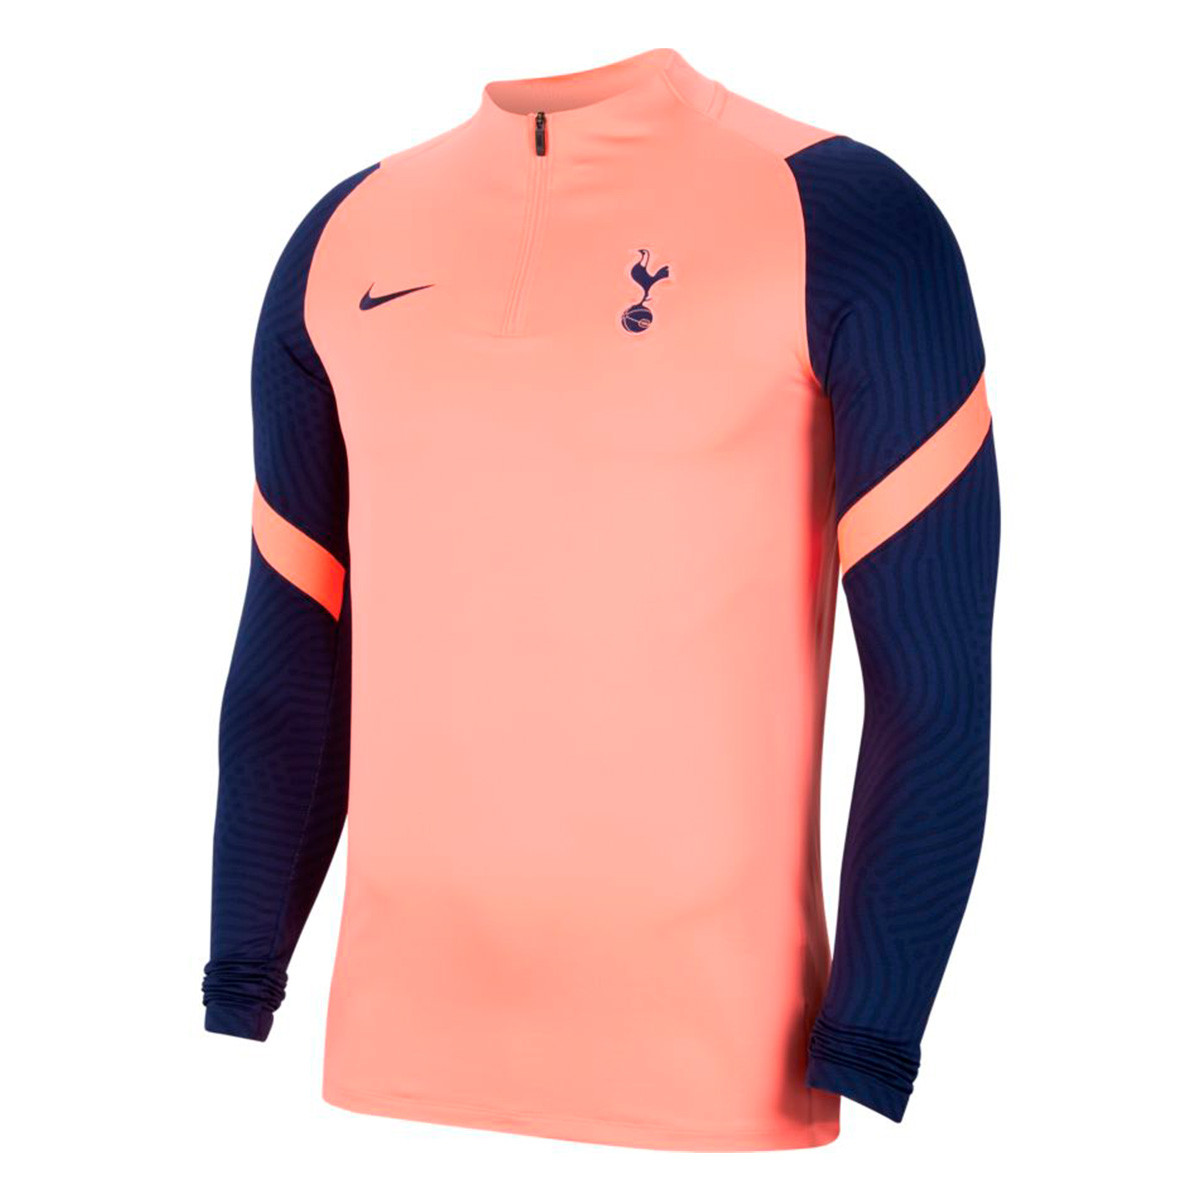 Sweatshirt Nike Tottenham Hotspur FC 